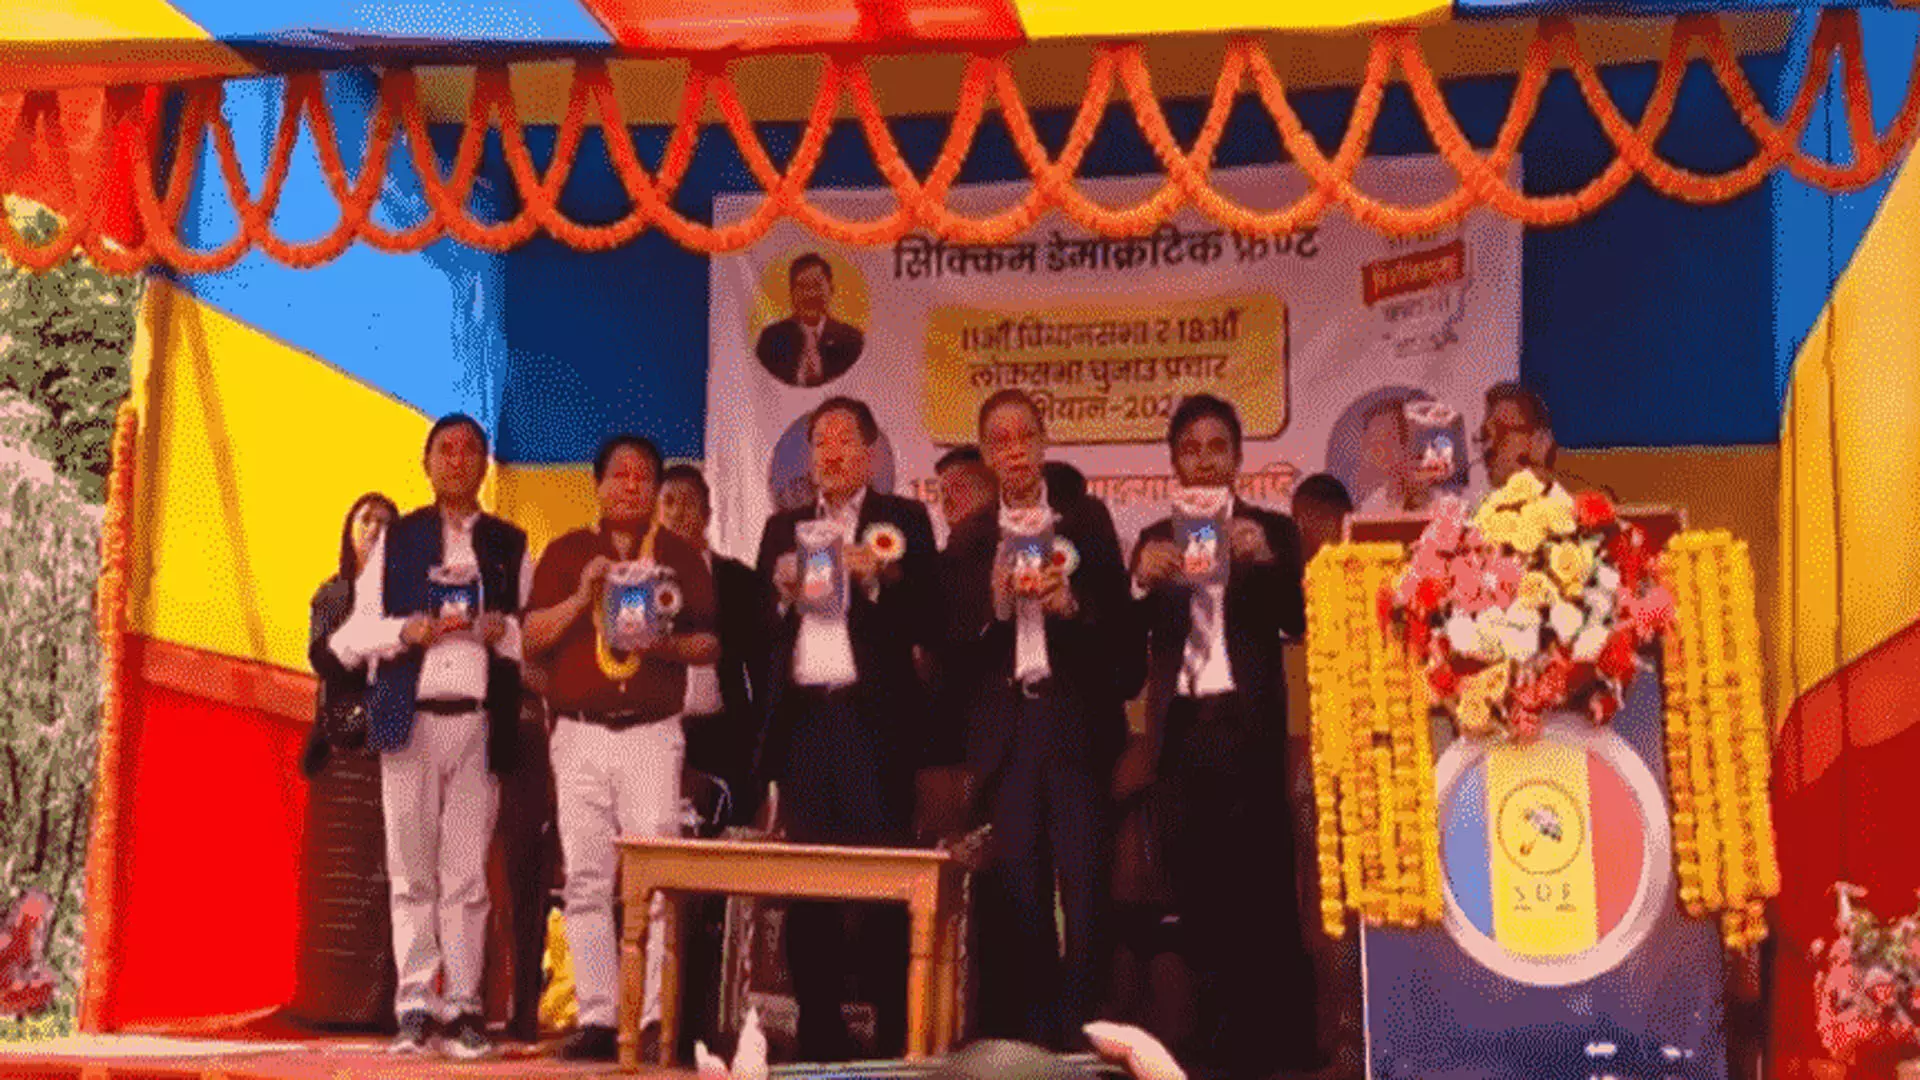 सिक्किम डेमोक्रेटिक फ्रंट ने घोषणापत्र जारी करते हुए 50% आरक्षण, कल्याण का वादा किया